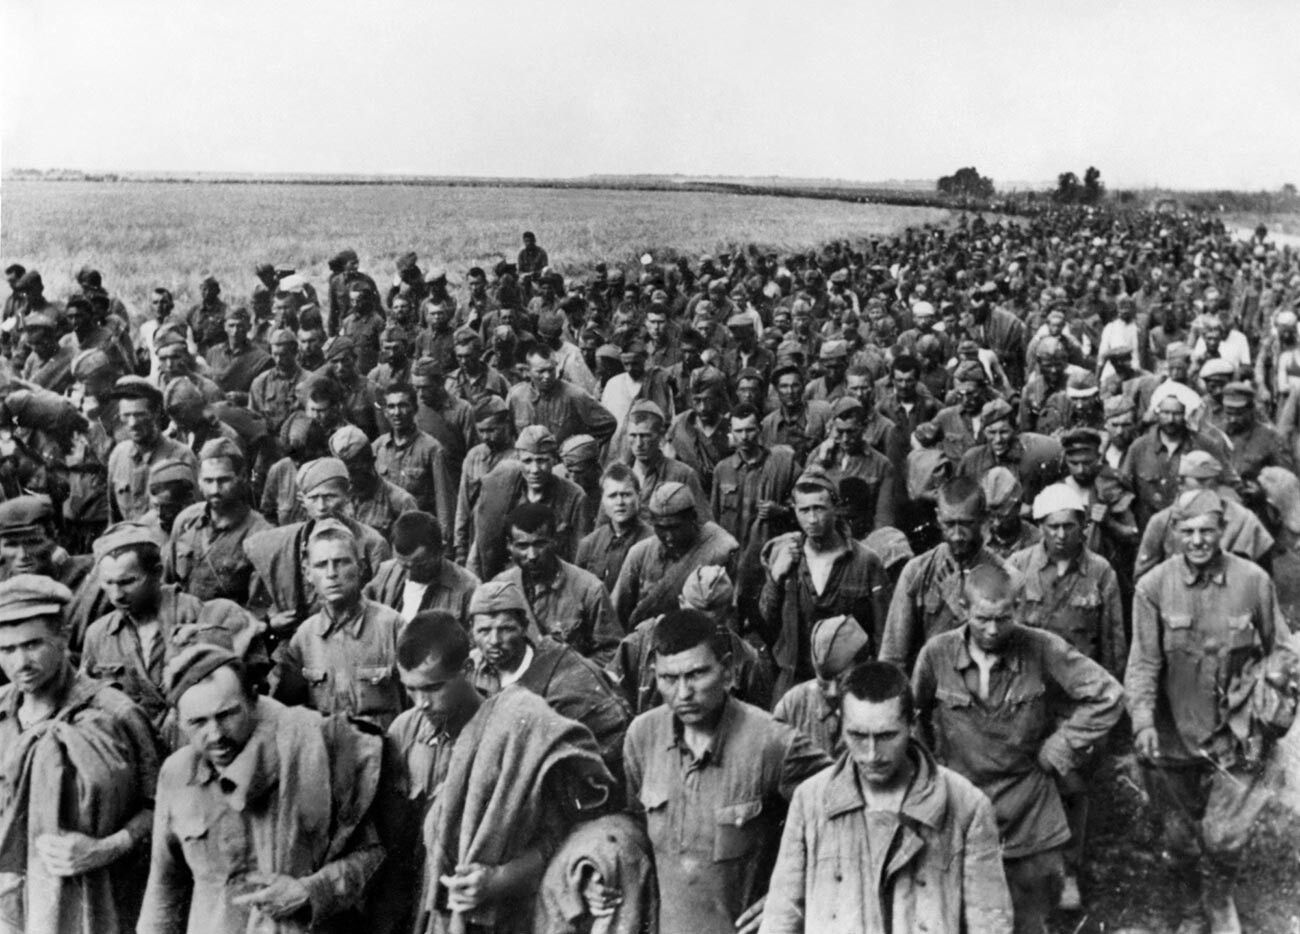 Ujetniki iz vrst Rdeče armade, okrožje Harkova, maj 1942